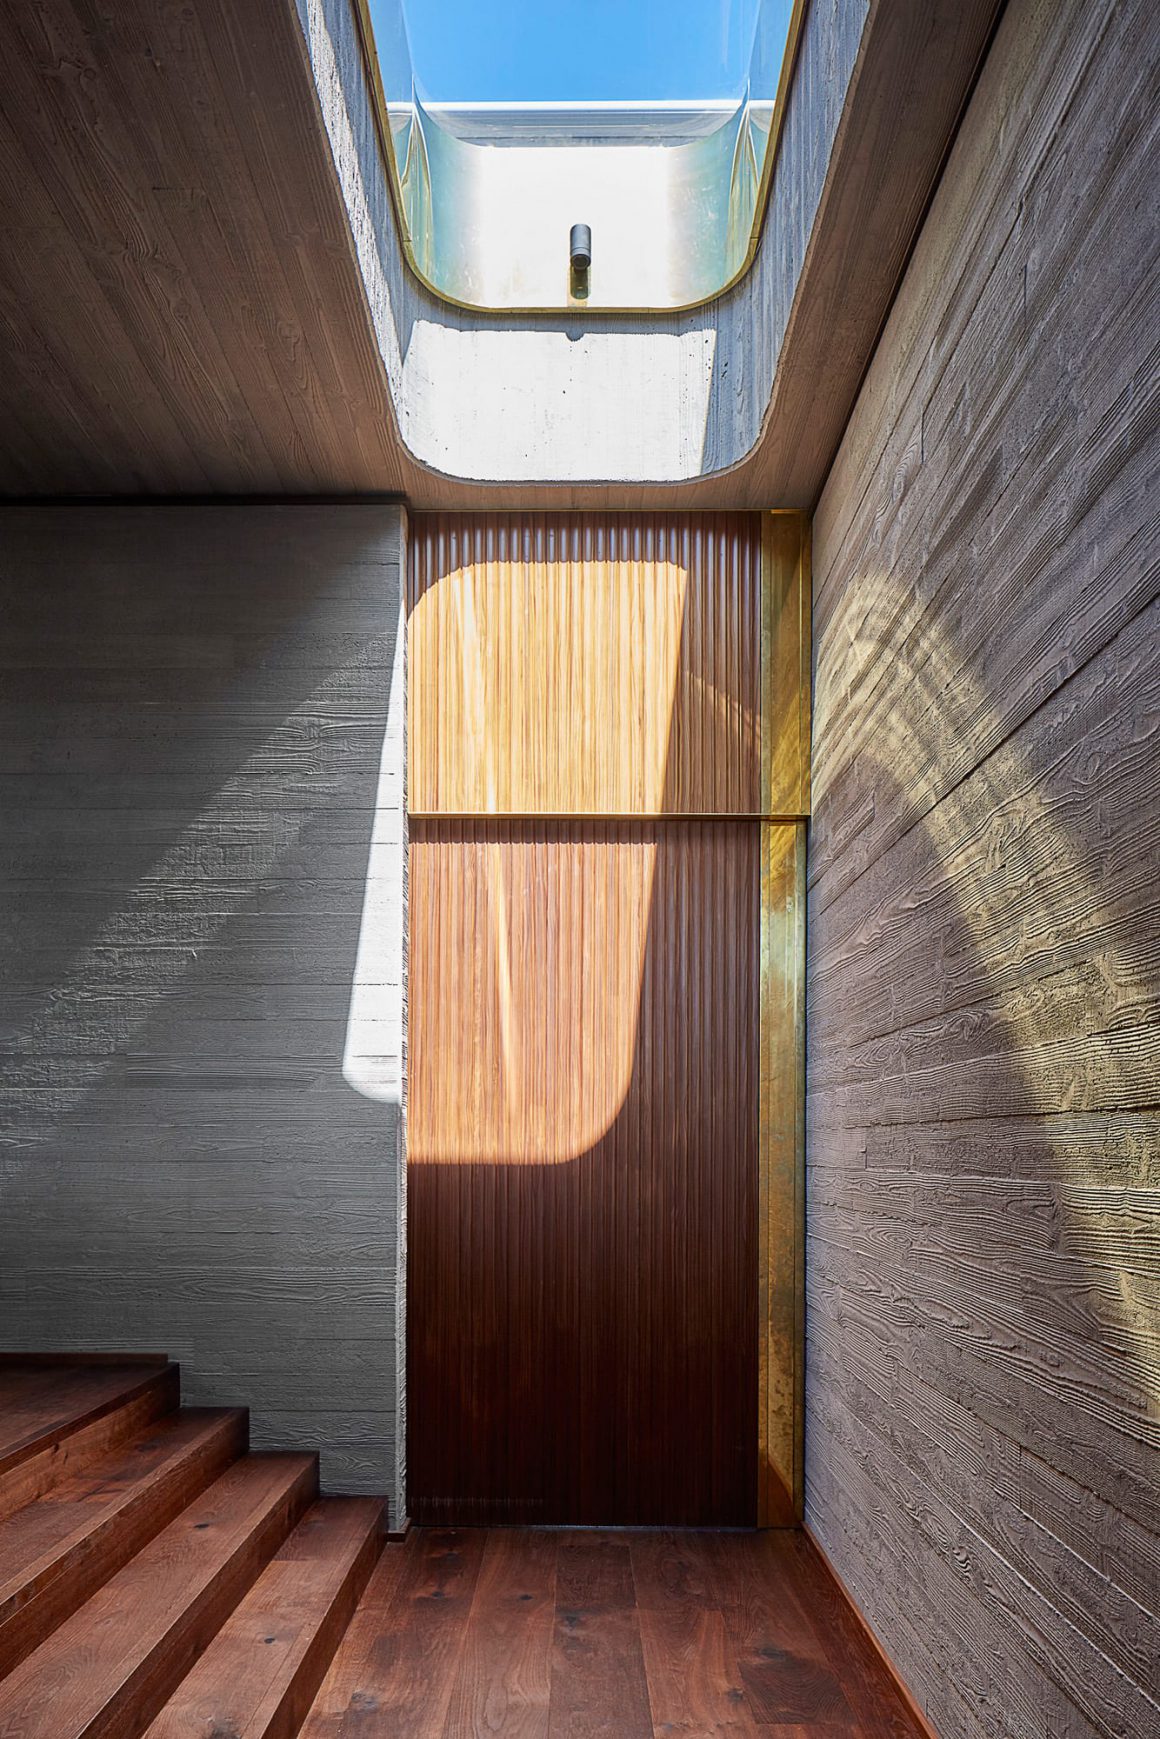 Porte d'entrée principale de la maison en bois bicolore brun et doré avec des lames fines et verticales qui contrastent avec les larges planches brut marron clair des murs. CP. Jack Lovel